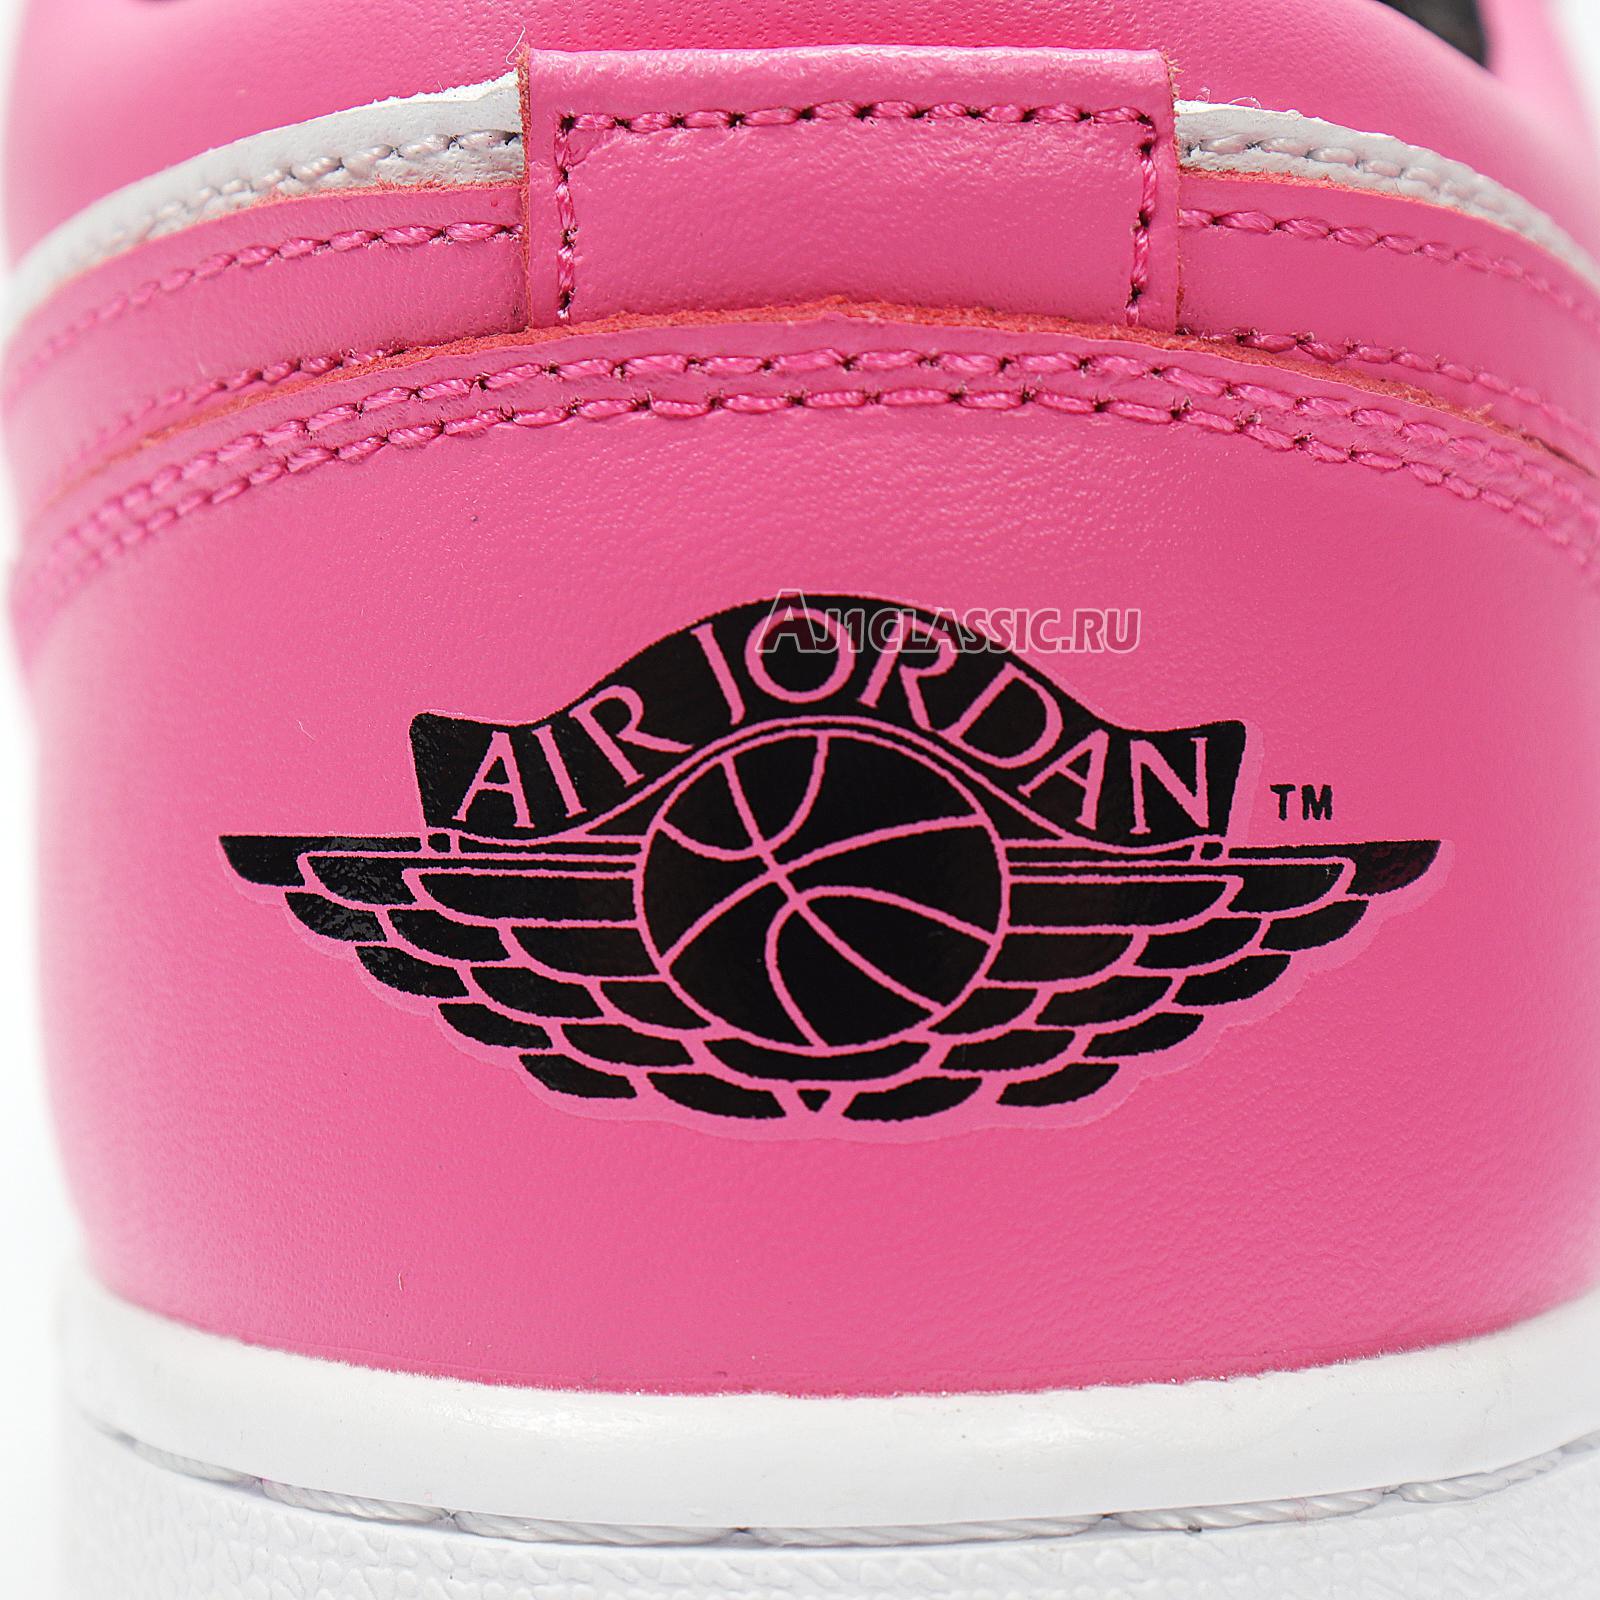 Air Jordan 1 Retro Low "Pinksicle" 554723-106